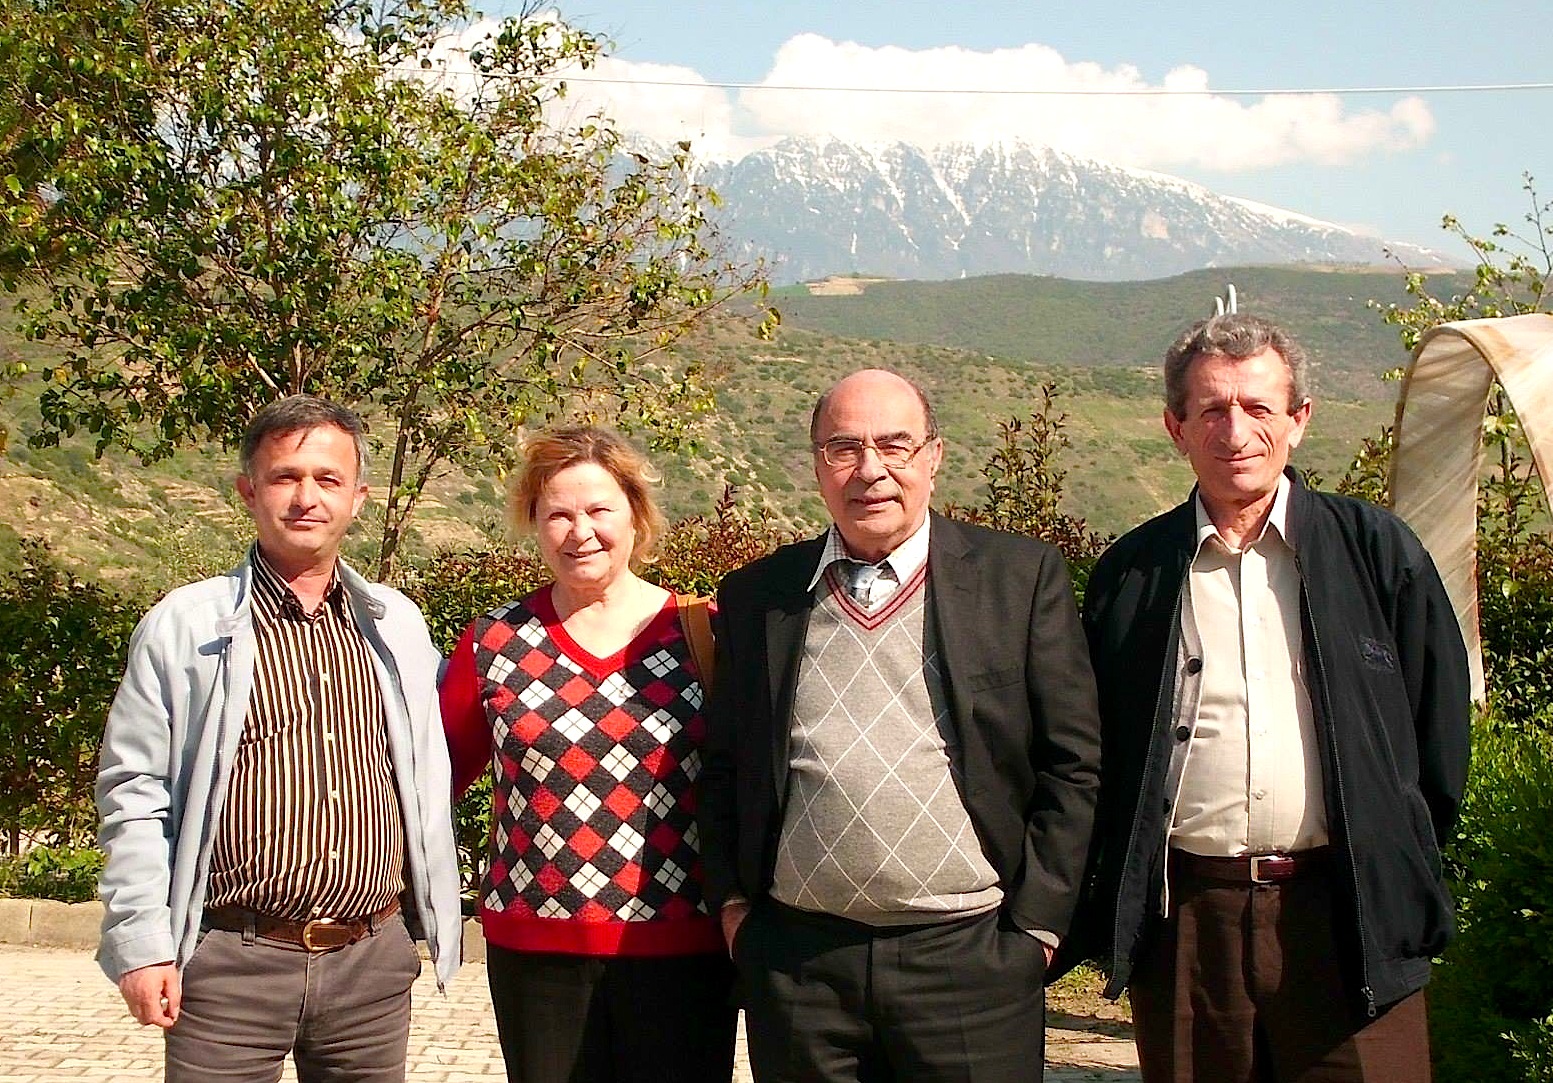 Simon Vrusho, Vali dhe Dr. Zino Matathia, Fatbardh Hoxha